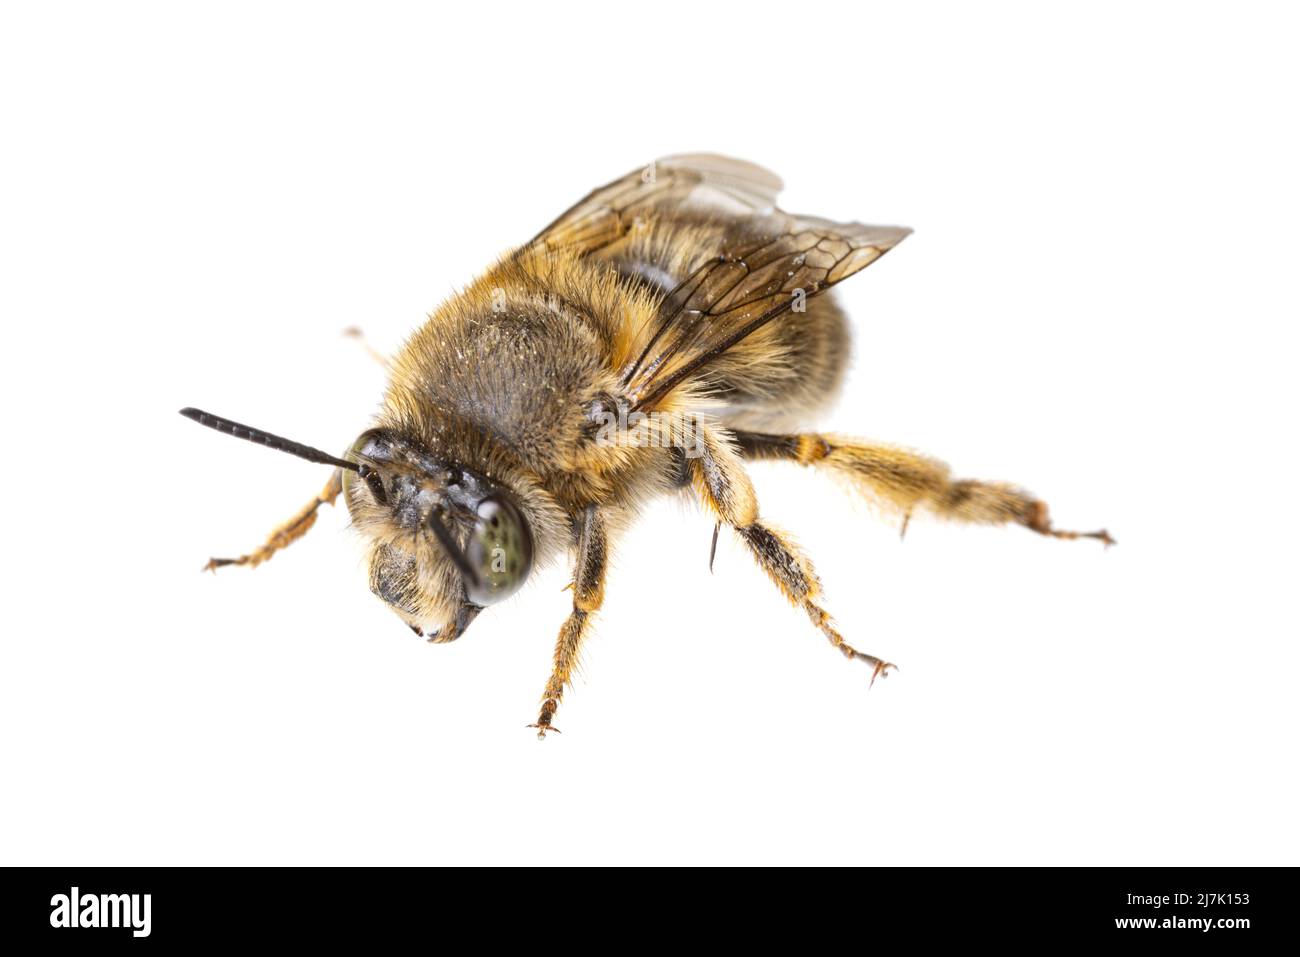 Insectos de europa - abejas: Macro de la hembra Anthophora crinipes (Pelzbienen) aisladas sobre fondo blanco - vista superior Foto de stock